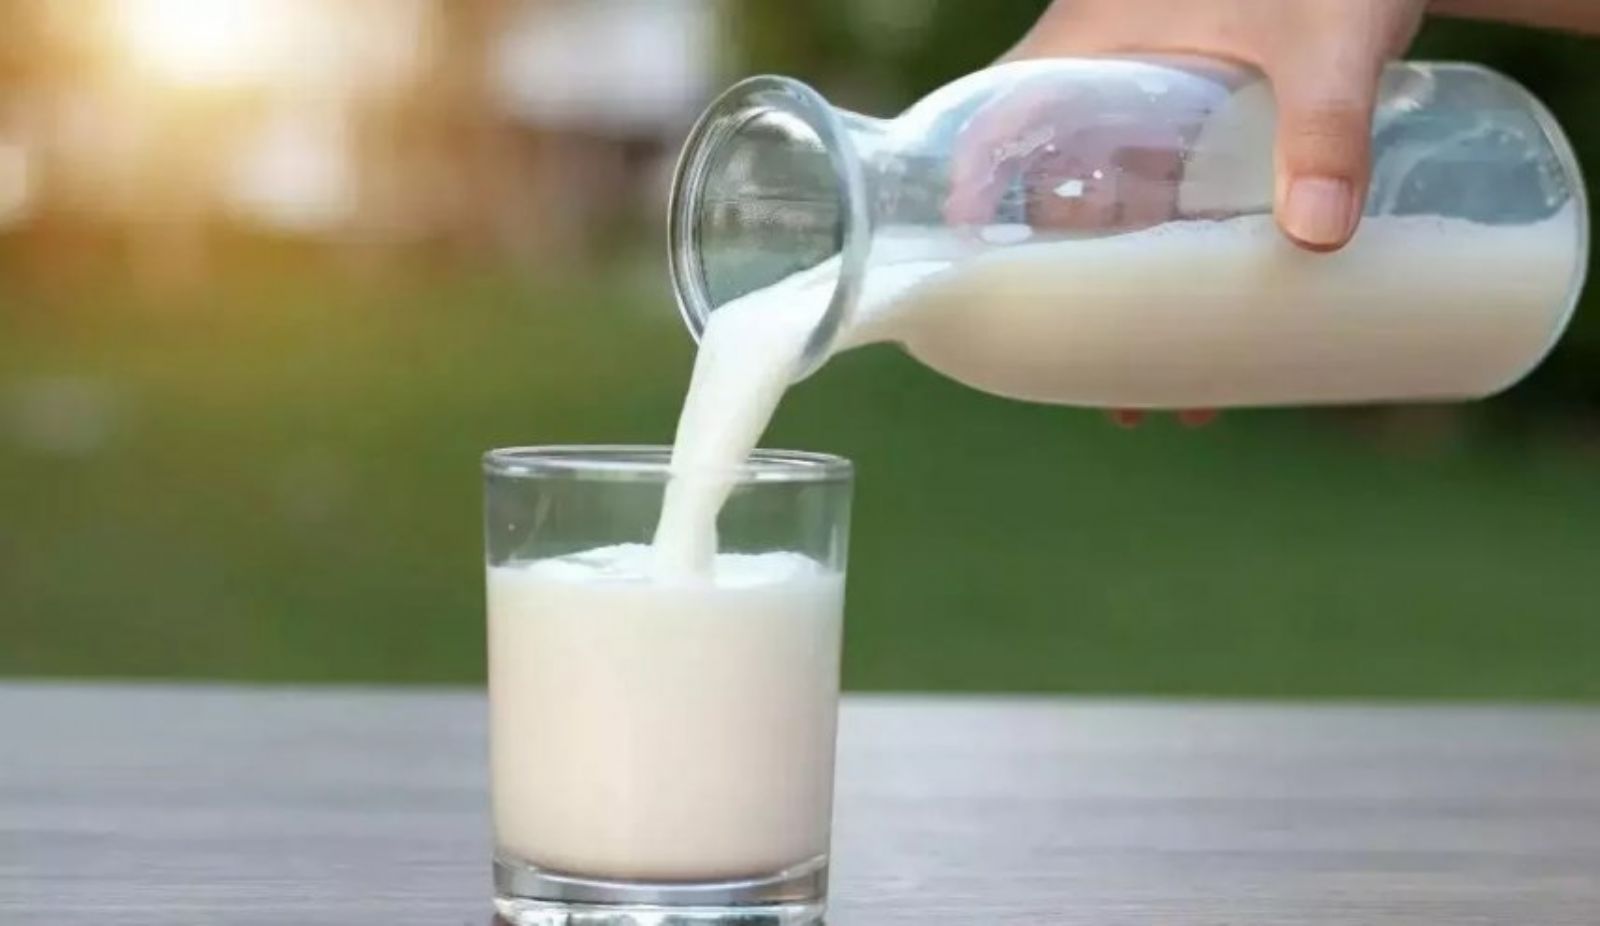 8 أطعمة ومشروبات أحذر تناولها مع الحليب